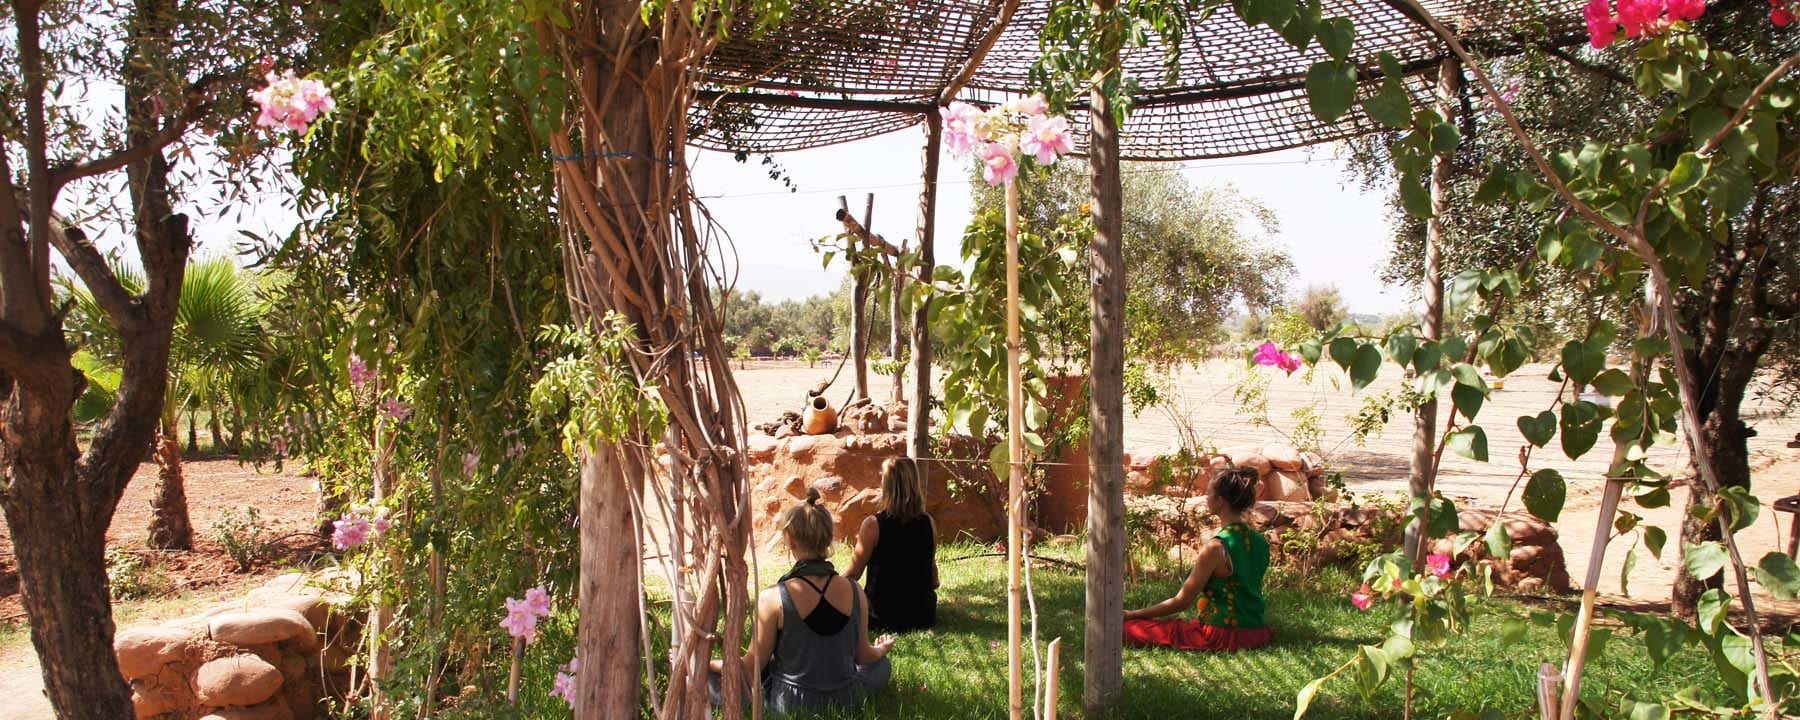 green-marrakech-yoga-retreats_source-nosade